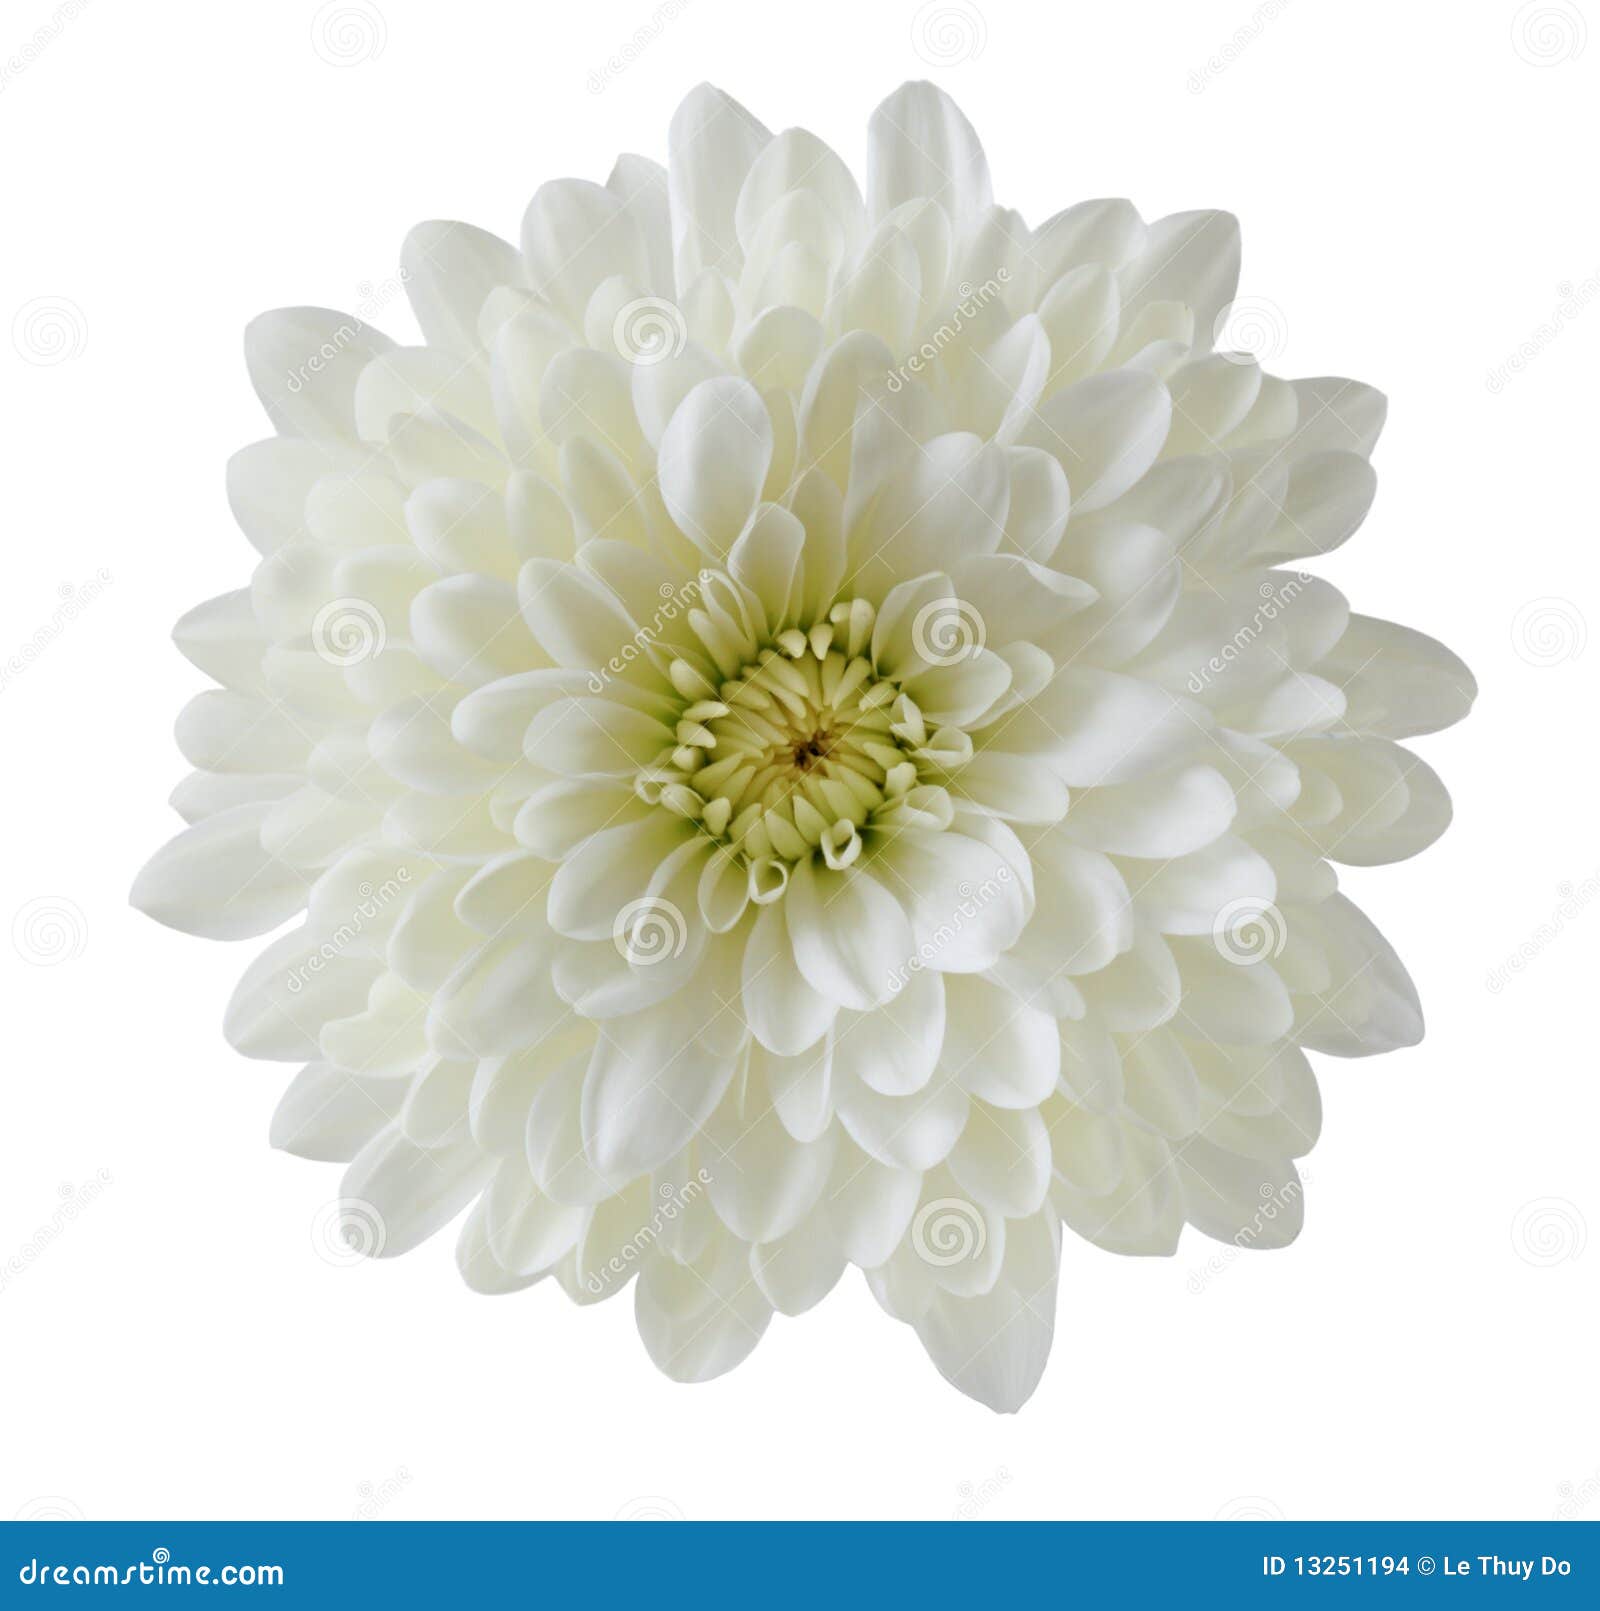 single white chrysanthemum